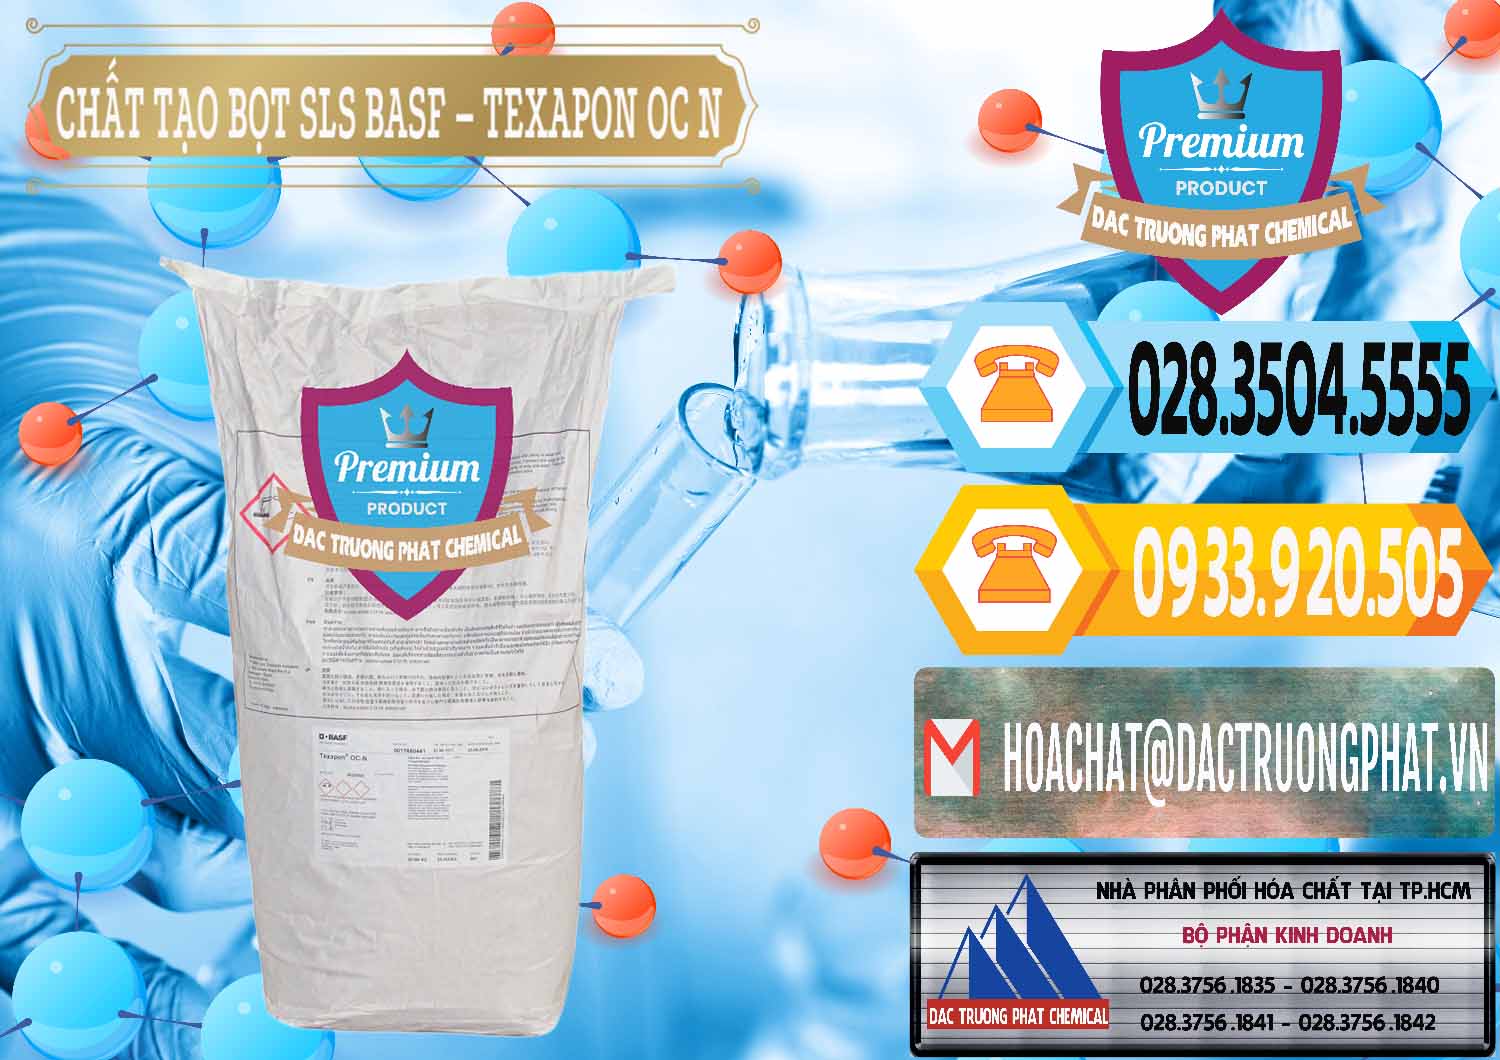 Chuyên bán - phân phối Chất Tạo Bọt SLS - Sodium Lauryl Sulfate BASF Texapon OC N - 0049 - Công ty phân phối _ cung cấp hóa chất tại TP.HCM - hoachattayrua.net